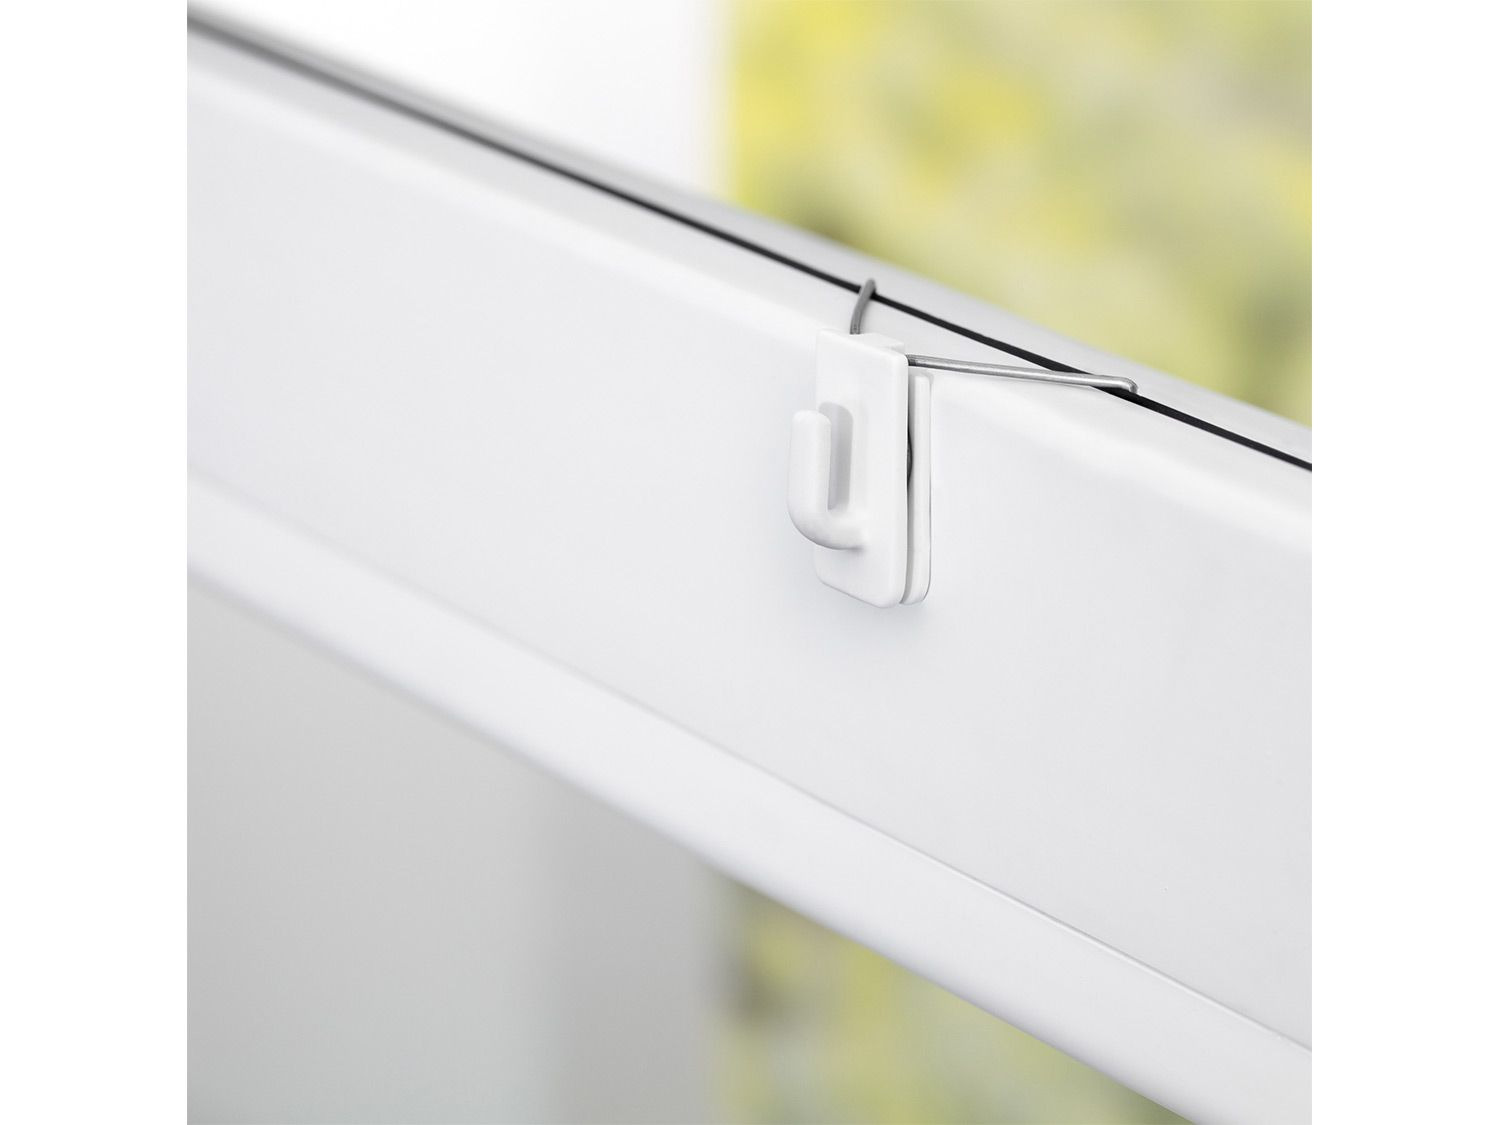 Fensterhaken Einhängehaken Metall Fenster-Klipp ohne Bohren Haken für Fenster 